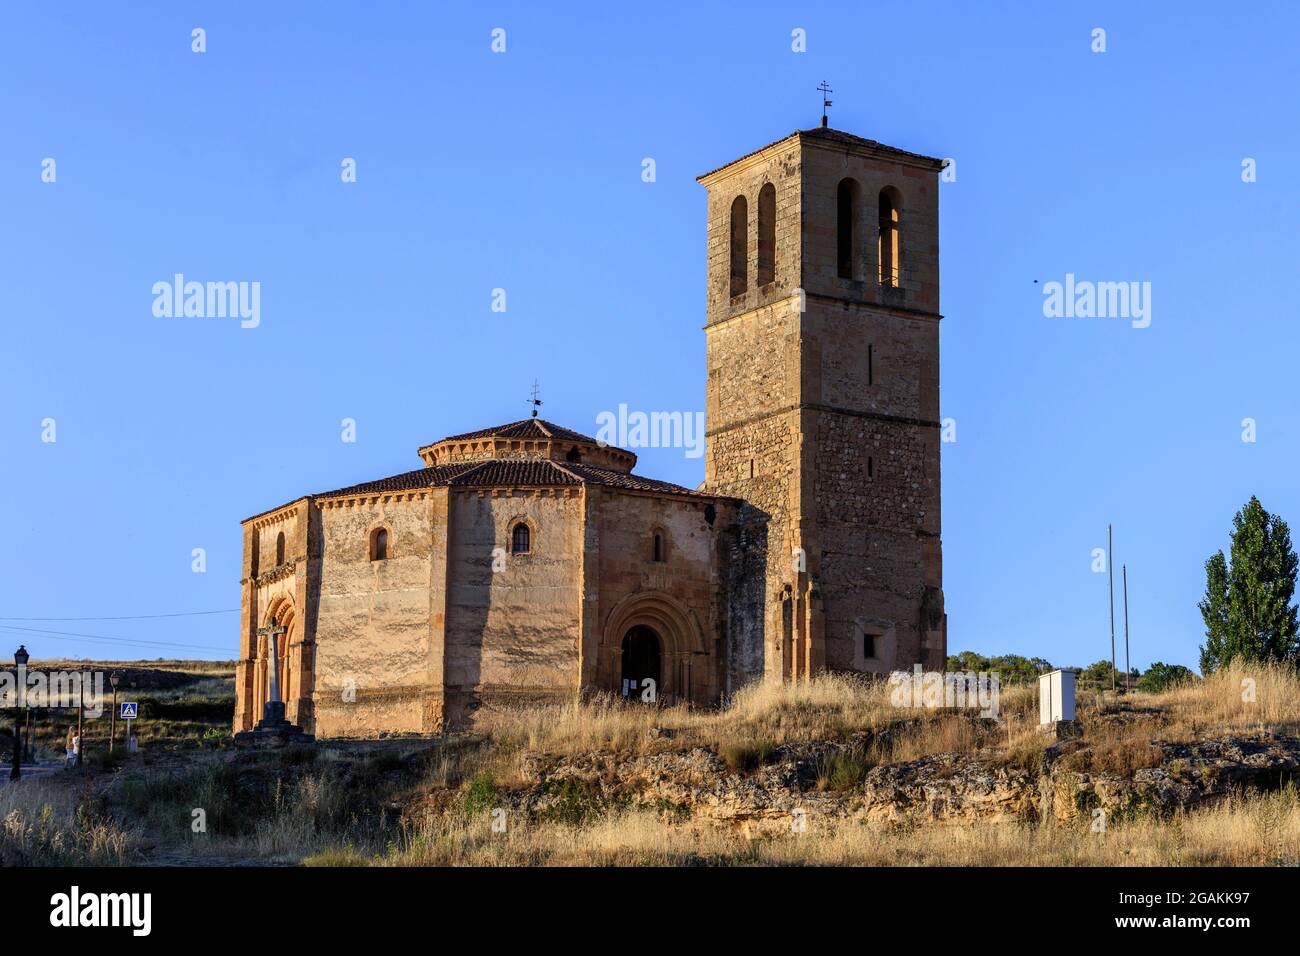 Die Vera Cruz Kirche ist ein katholisches Heiligtum, das vom Templerorden in Form eines Achtecks erbaut wurde. Segovia. Spanien. Stockfoto